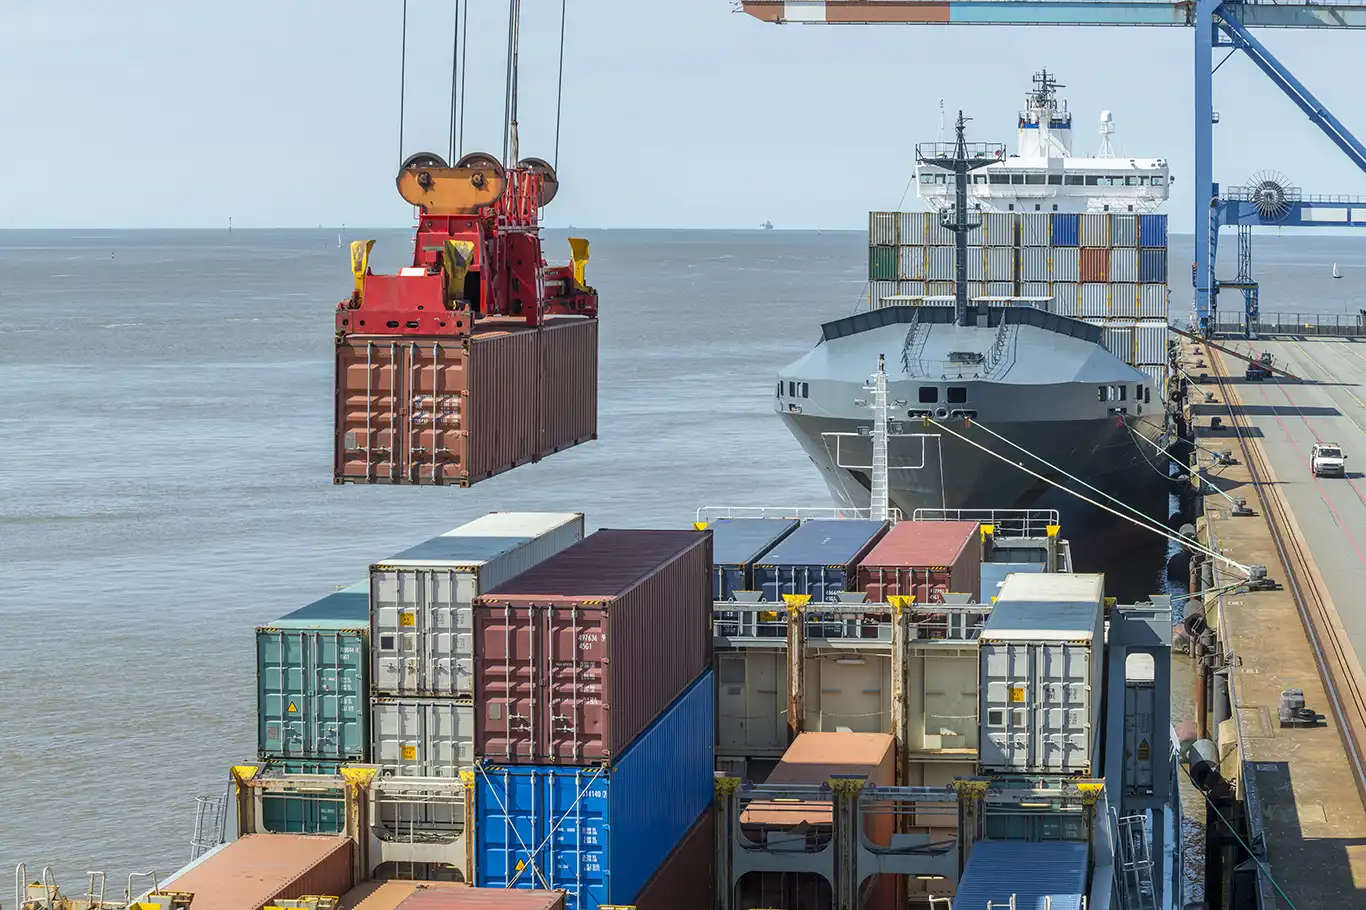 Malaysia bans israeli shipping company from docking in any Malaysian port